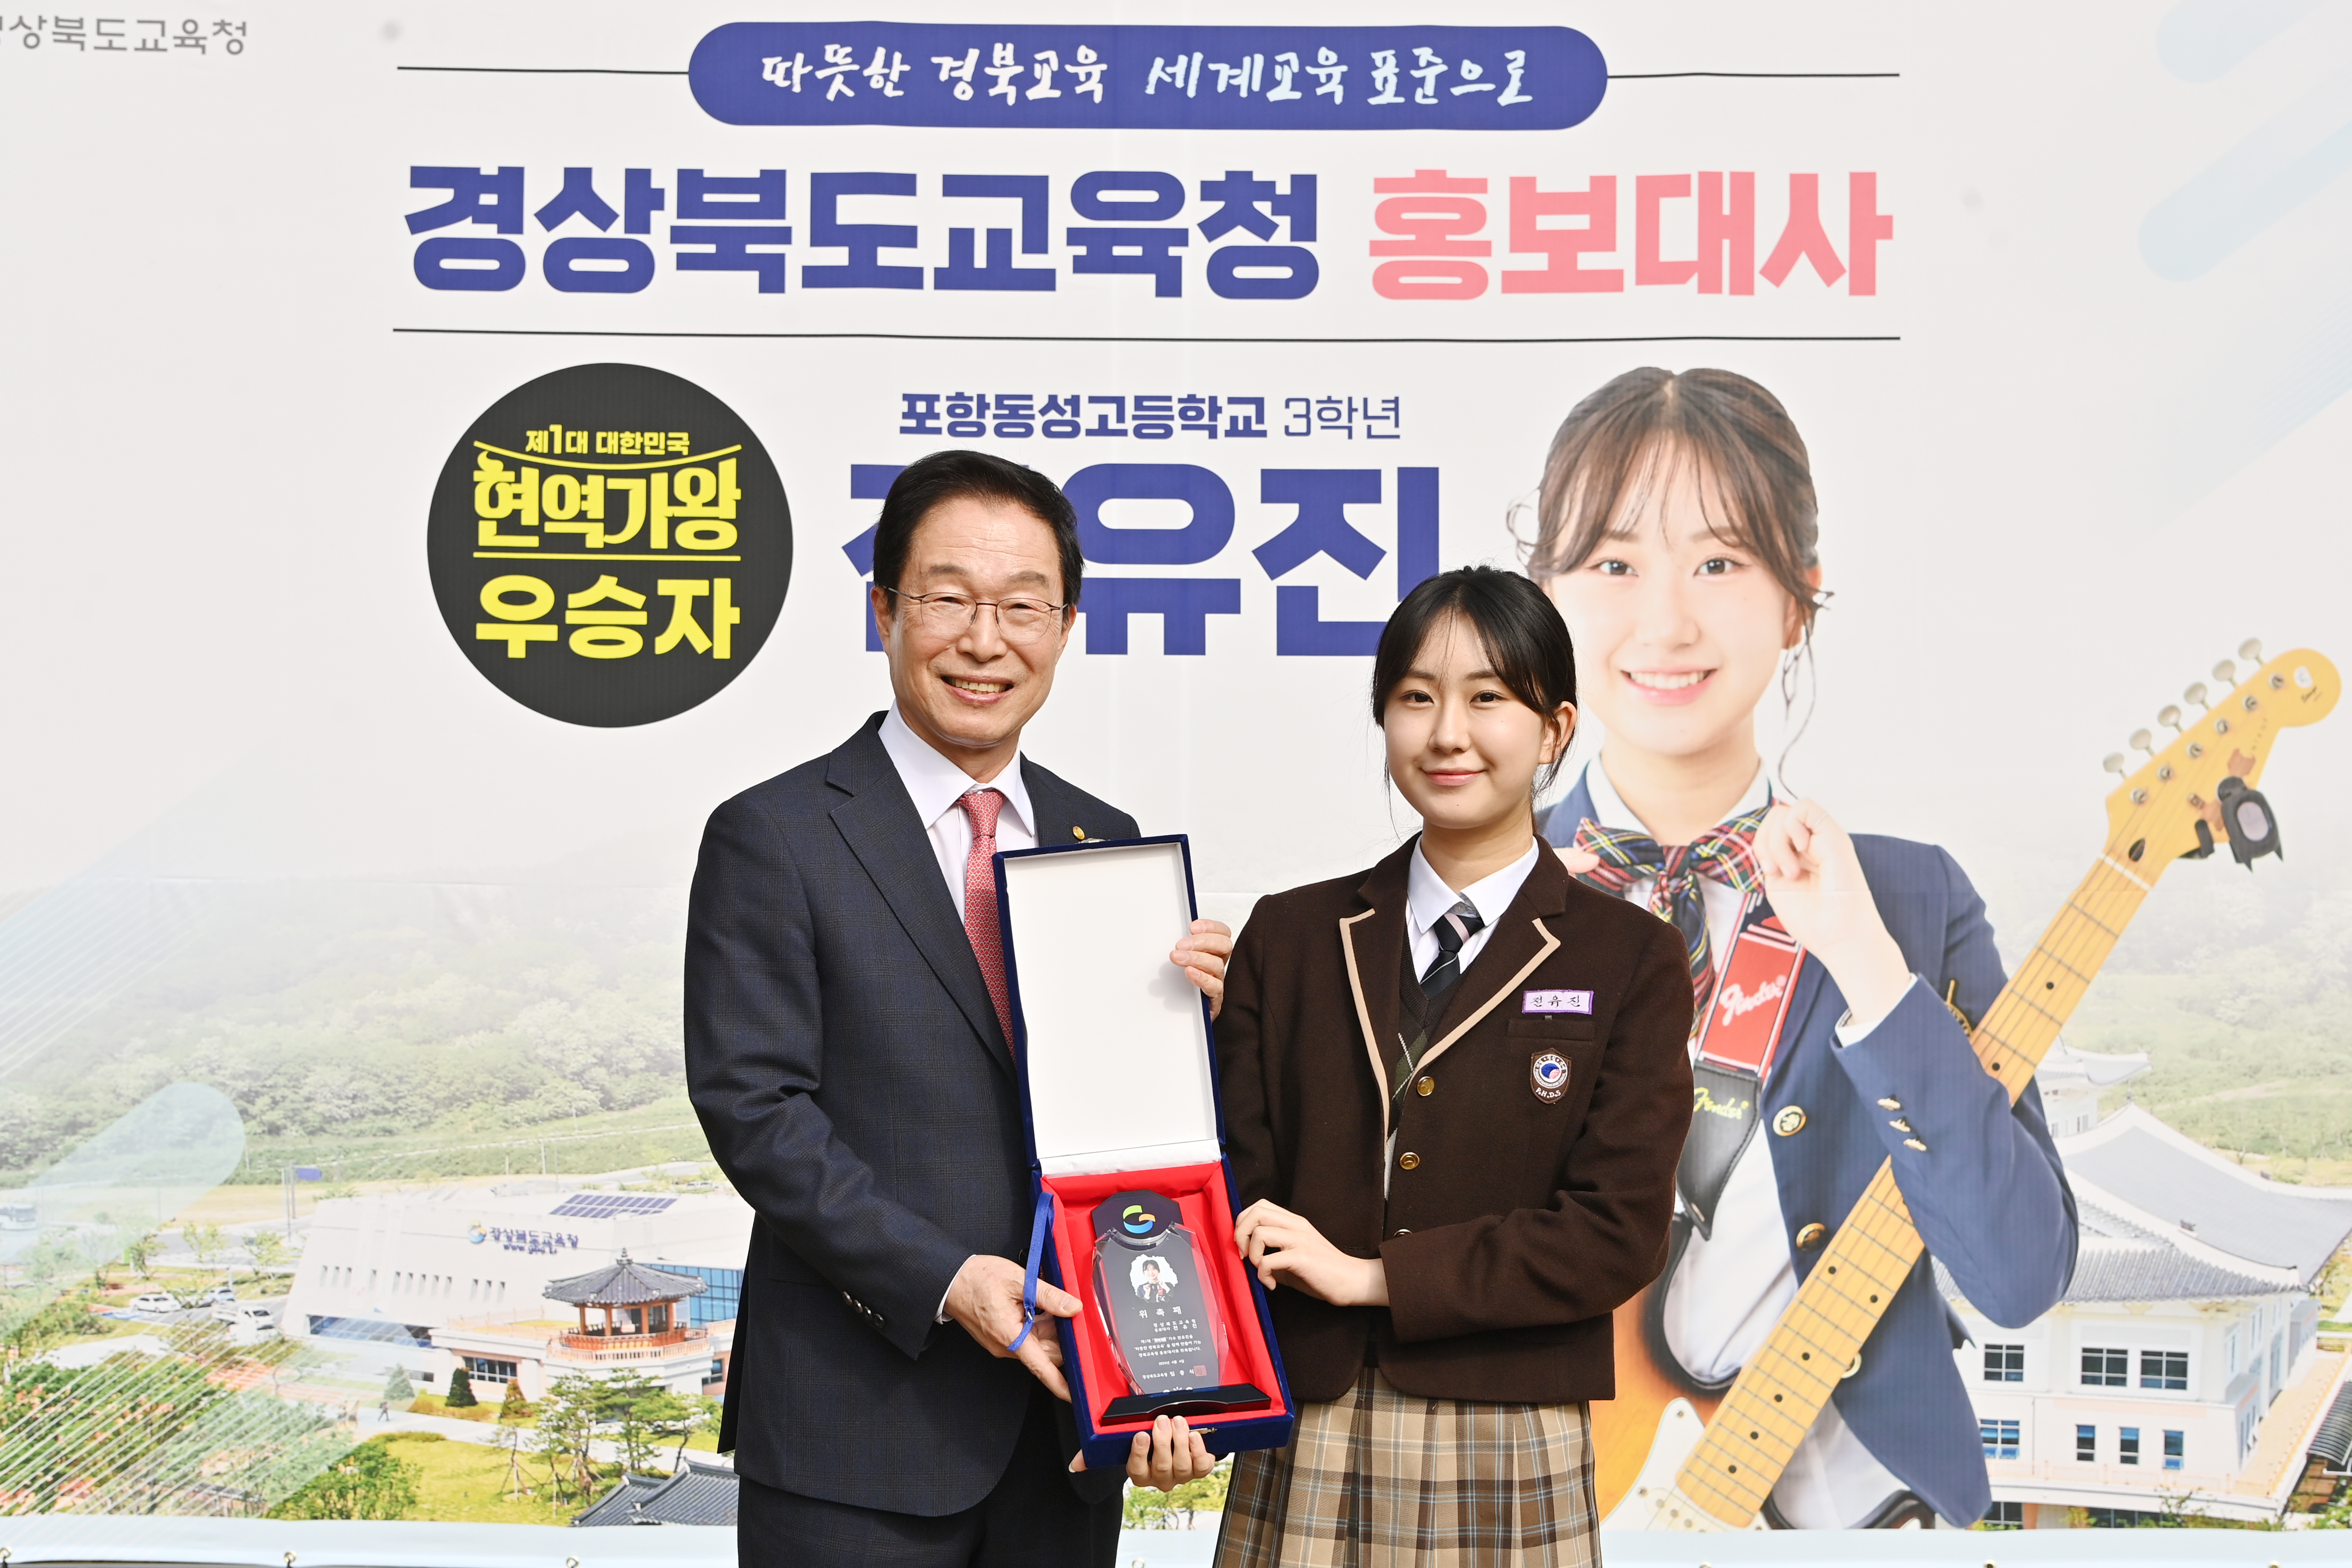 경북교육 홍보대사에 전유진 학생을 위촉하고 촬영 한 기념 사진  확대 보기